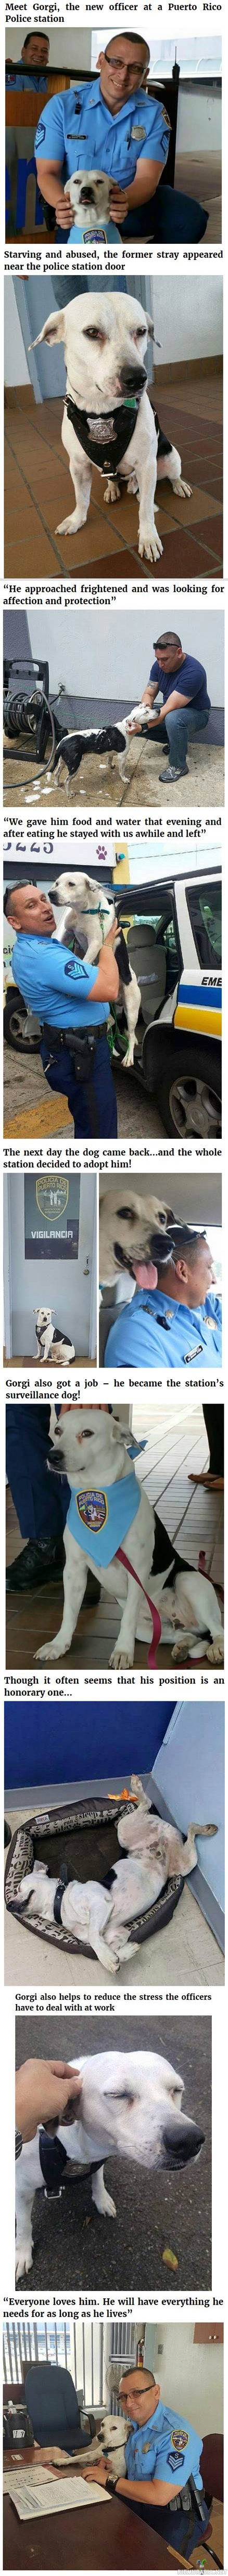 Poliisikoira Gorgi - Puerto Ricolainen Gorgi-koira päätyi sattumusten kautta poliisikoiraksi